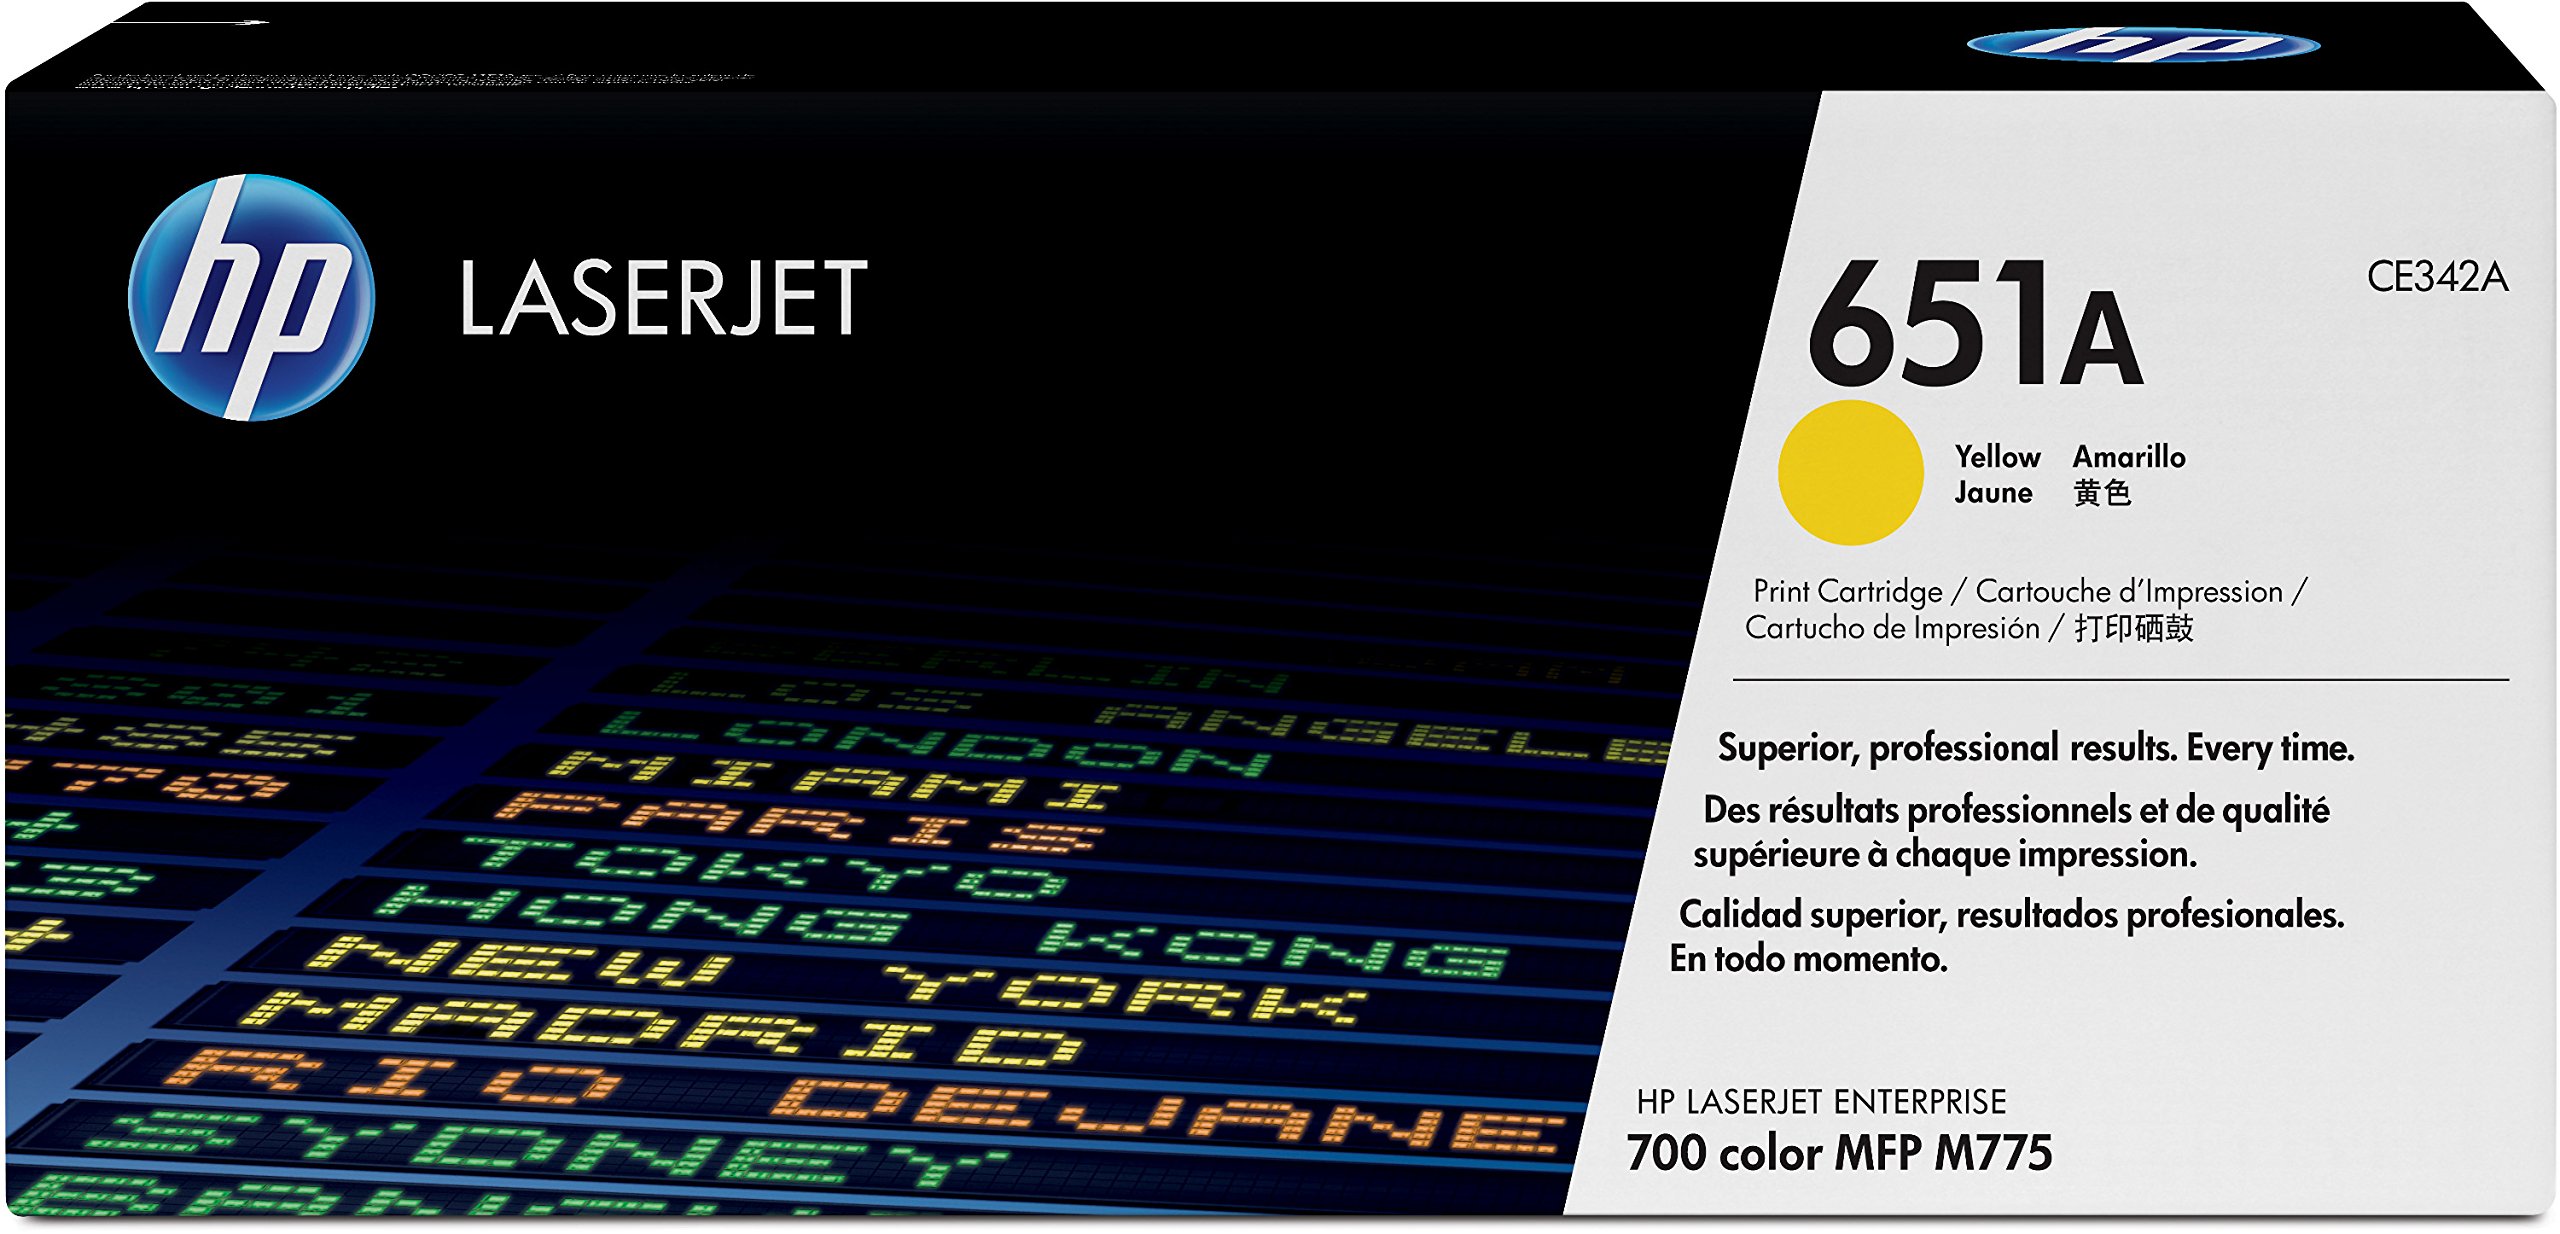 HP Оригинальный картридж с желтым тонером 651A | Работает с цветным МФУ LaserJet Enterprise 700 серии M775 | CE342A